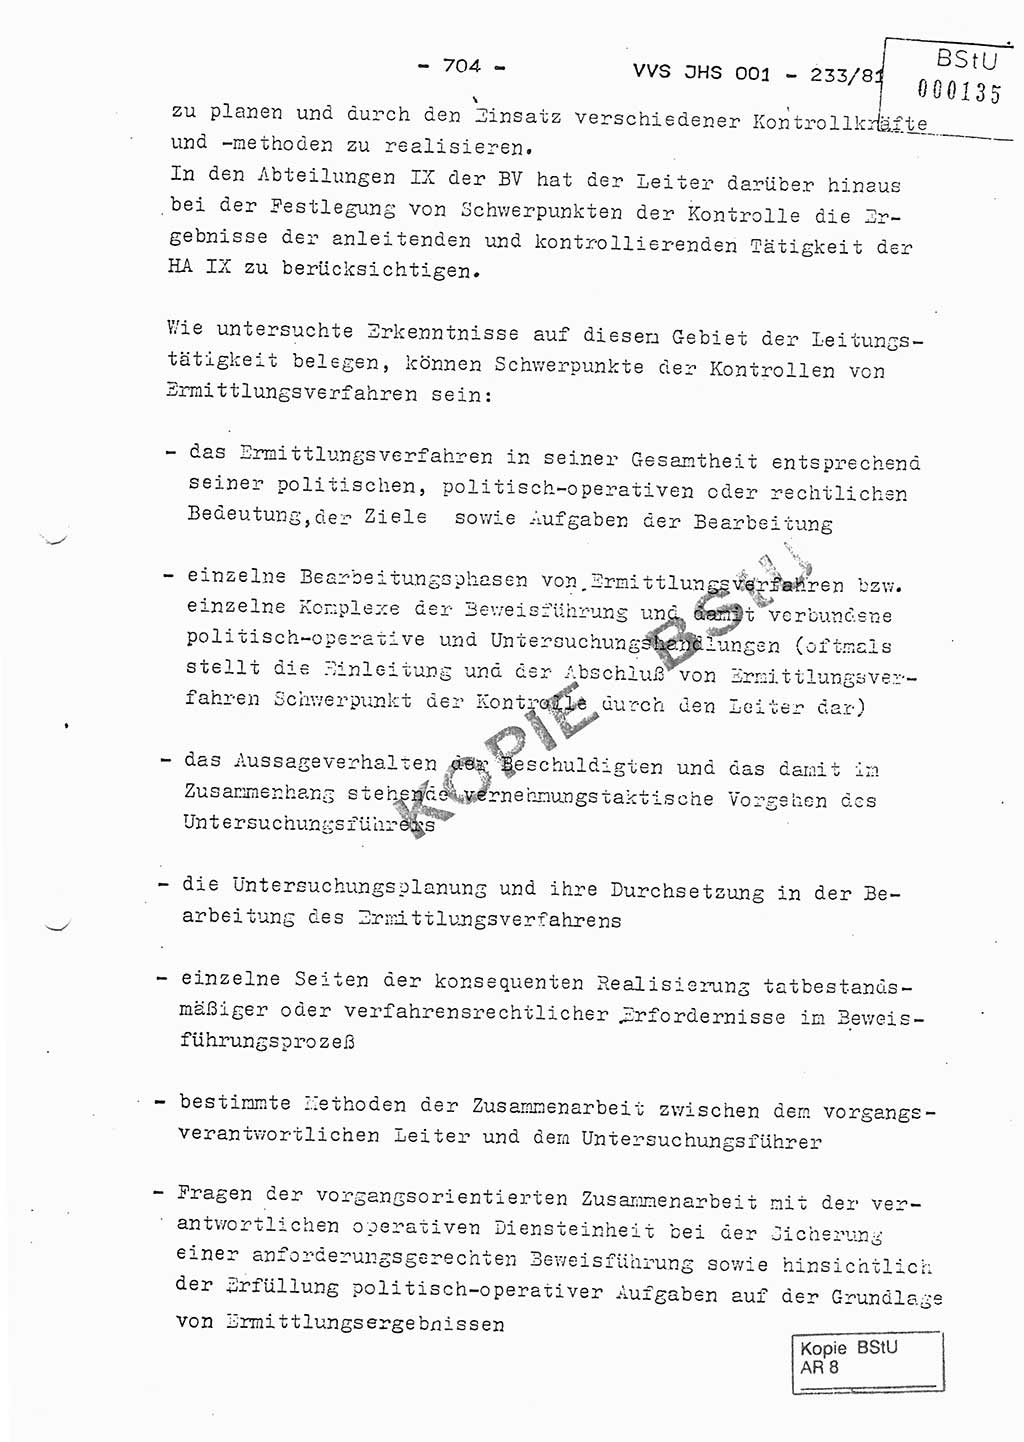 Dissertation Oberstleutnant Horst Zank (JHS), Oberstleutnant Dr. Karl-Heinz Knoblauch (JHS), Oberstleutnant Gustav-Adolf Kowalewski (HA Ⅸ), Oberstleutnant Wolfgang Plötner (HA Ⅸ), Ministerium für Staatssicherheit (MfS) [Deutsche Demokratische Republik (DDR)], Juristische Hochschule (JHS), Vertrauliche Verschlußsache (VVS) o001-233/81, Potsdam 1981, Blatt 704 (Diss. MfS DDR JHS VVS o001-233/81 1981, Bl. 704)